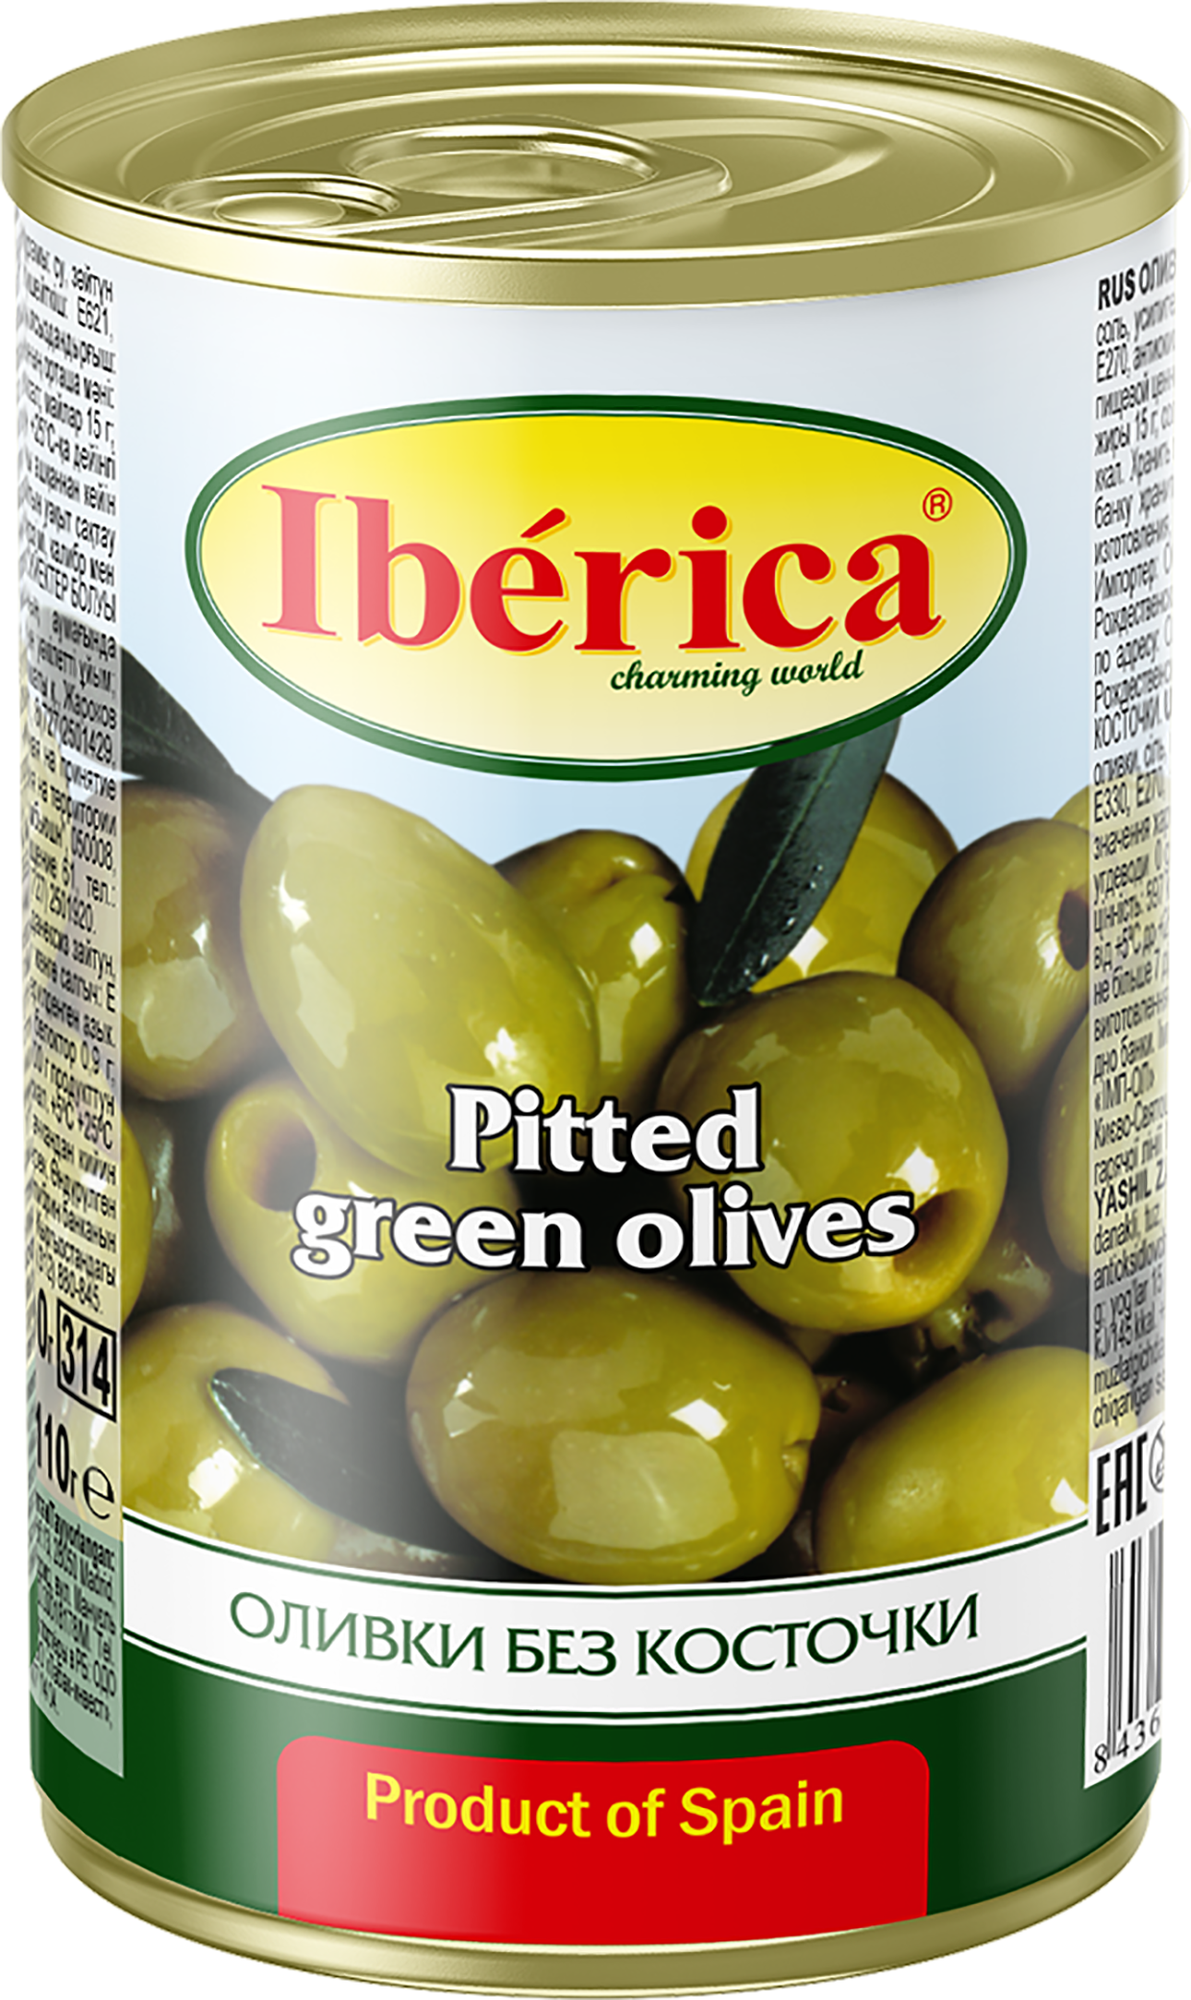 Оливки Iberica без косточки